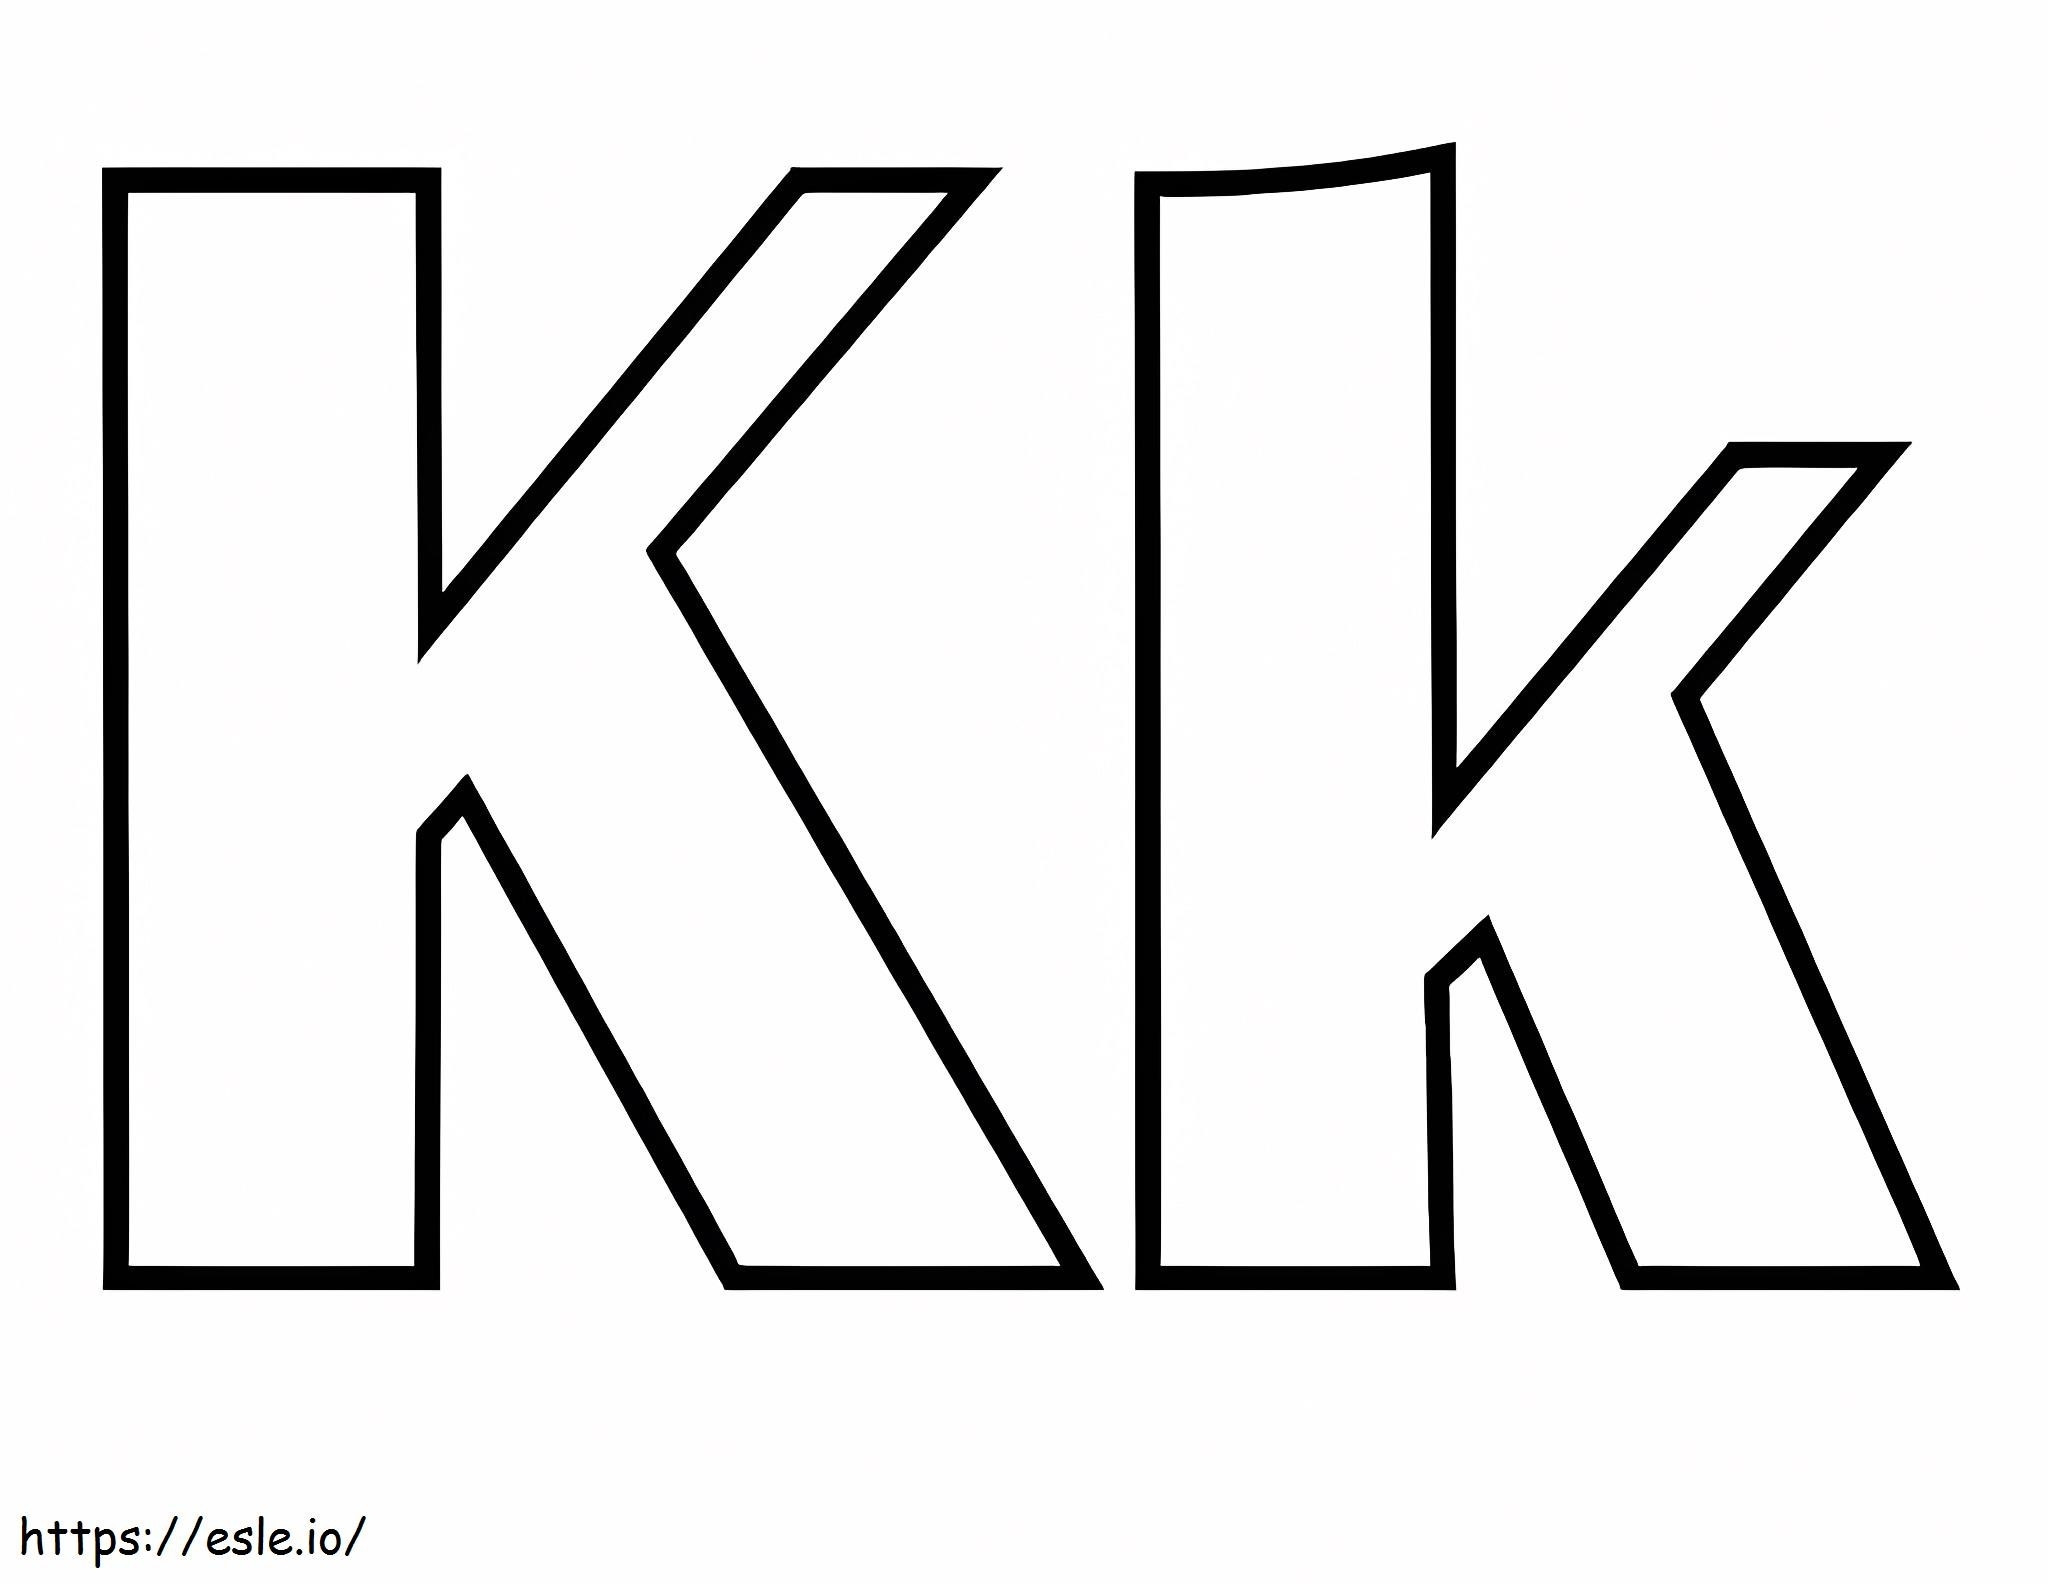 Zwei Buchstaben K ausmalbilder